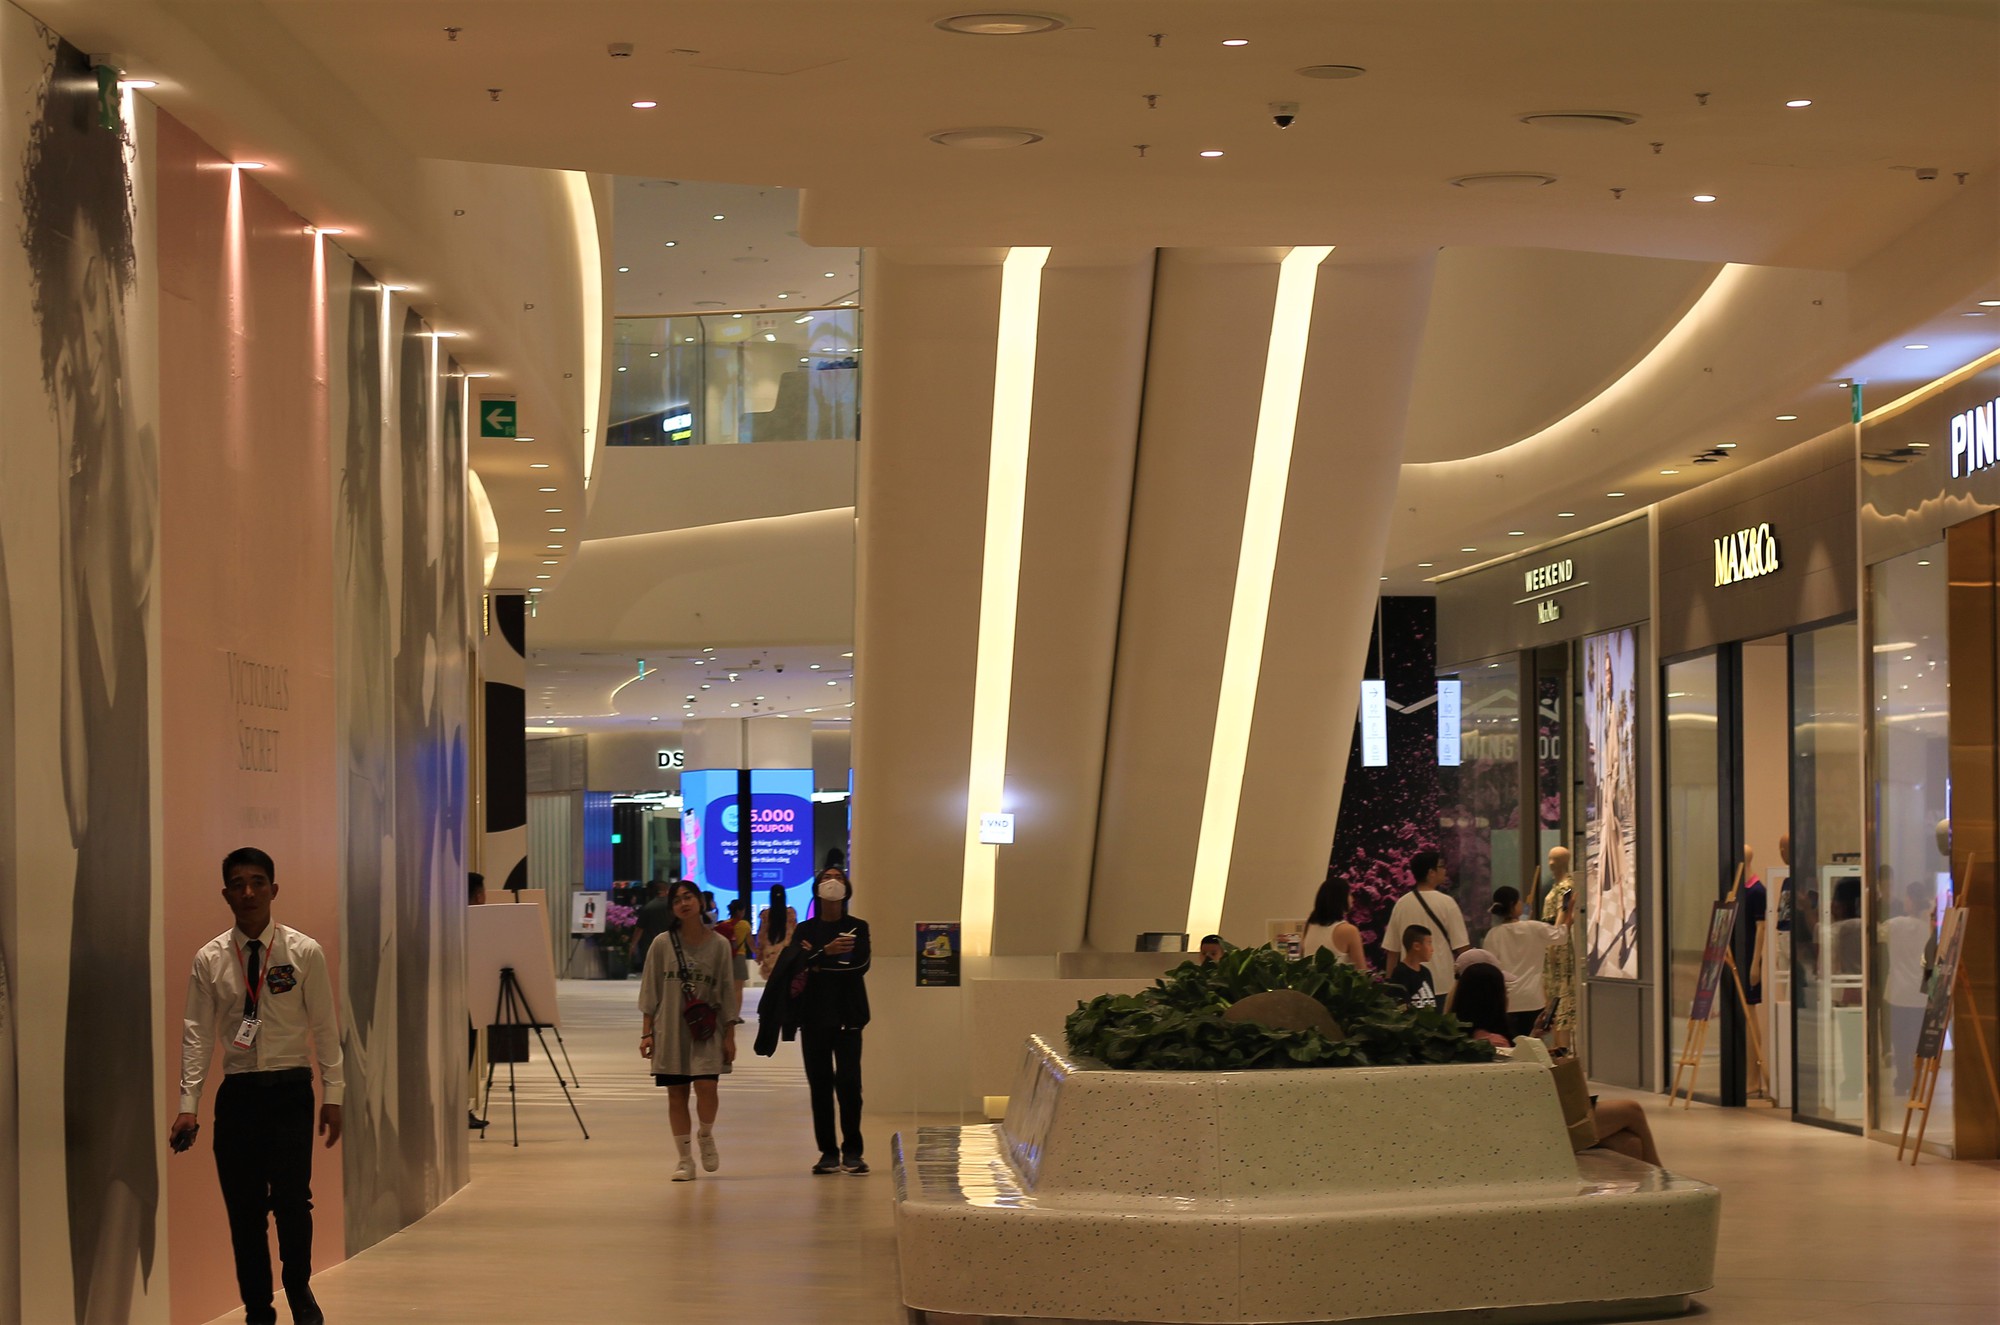 Chiêm ngưỡng trung tâm thương mại lớn nhất của Lotte tại Việt Nam - Ảnh 4.